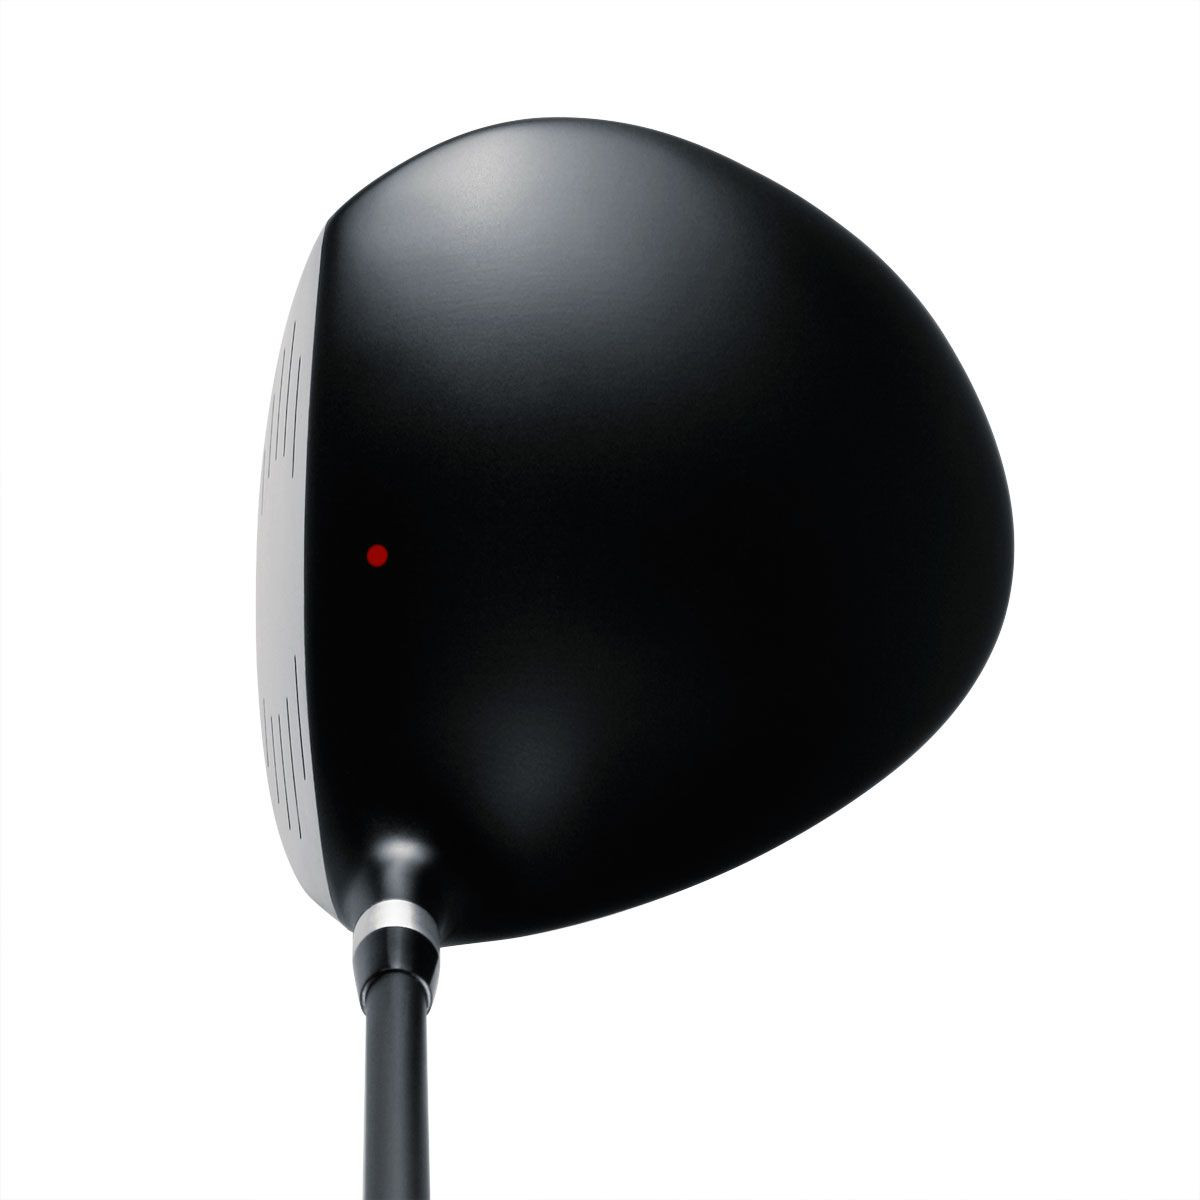 Powerbilt Golf Clubs XP7 Black 10.5 Driver, Graphite Stiff Flex Shaft